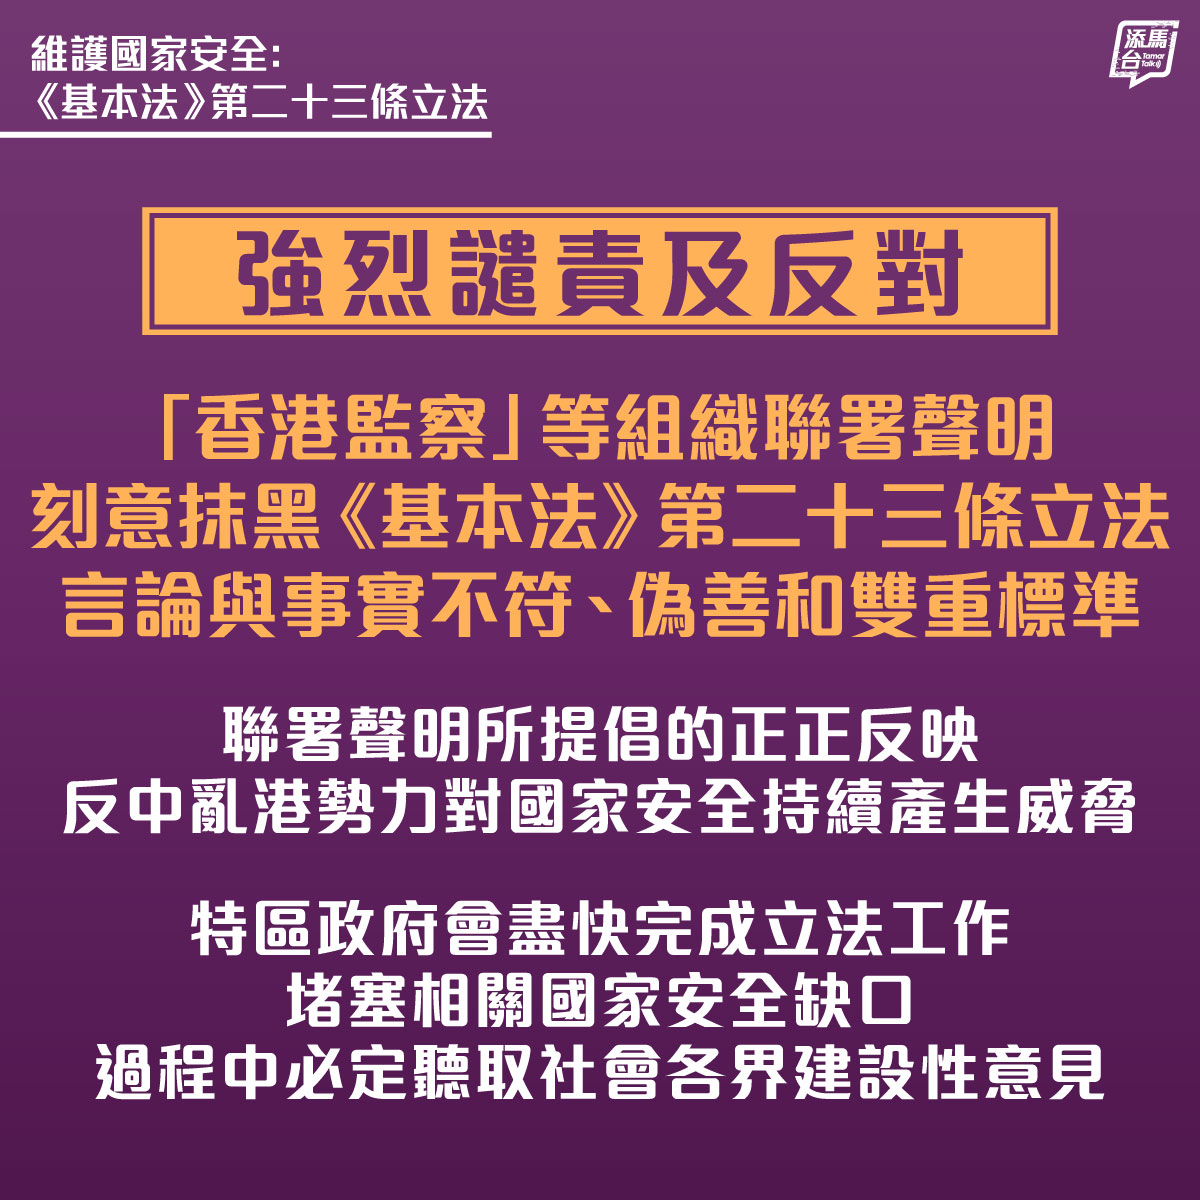 【強烈譴責「香港監察」等組織失實言論】特區政府強烈譴責及反對「香港監察」和其他組織的聯署聲明，刻意抹黑《基本法》第23條立法，言論與事實全然不符。